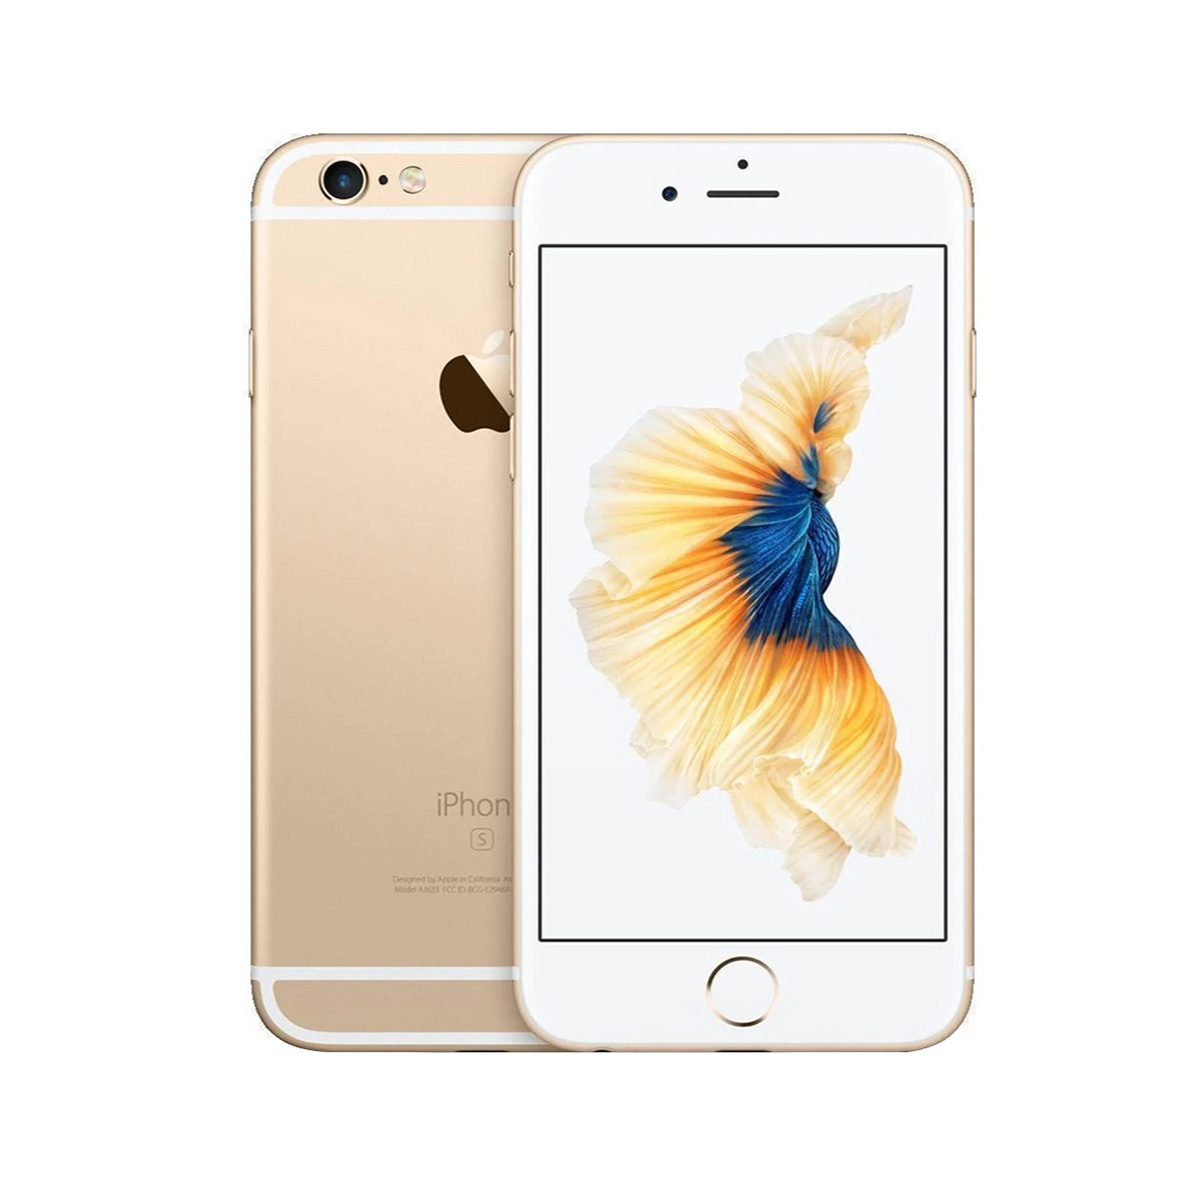 Apple iPhone 6s Plus 16gb Tela 5.5' 4g 12mp - Mostruário